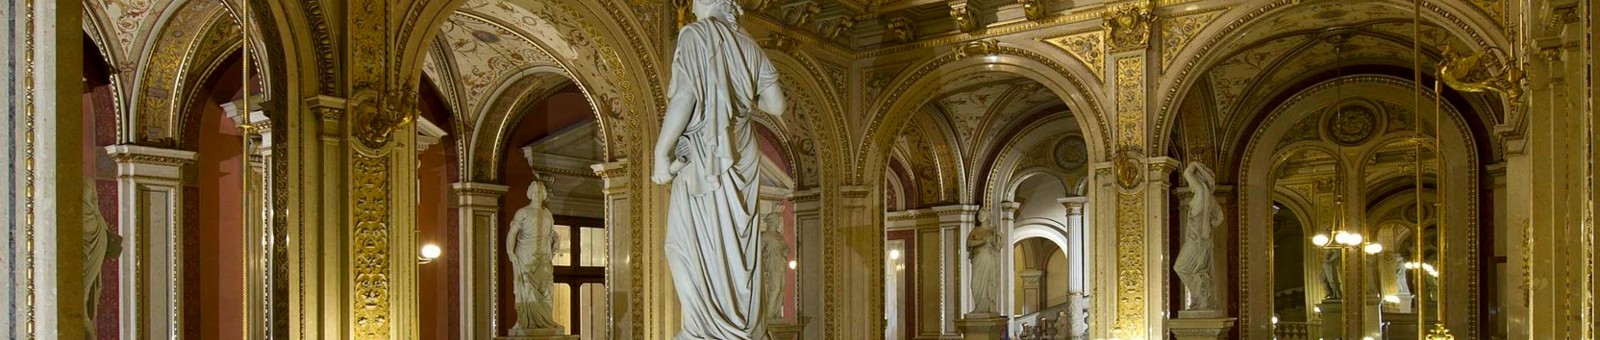     ウィーン国立歌劇場の祝祭階段 